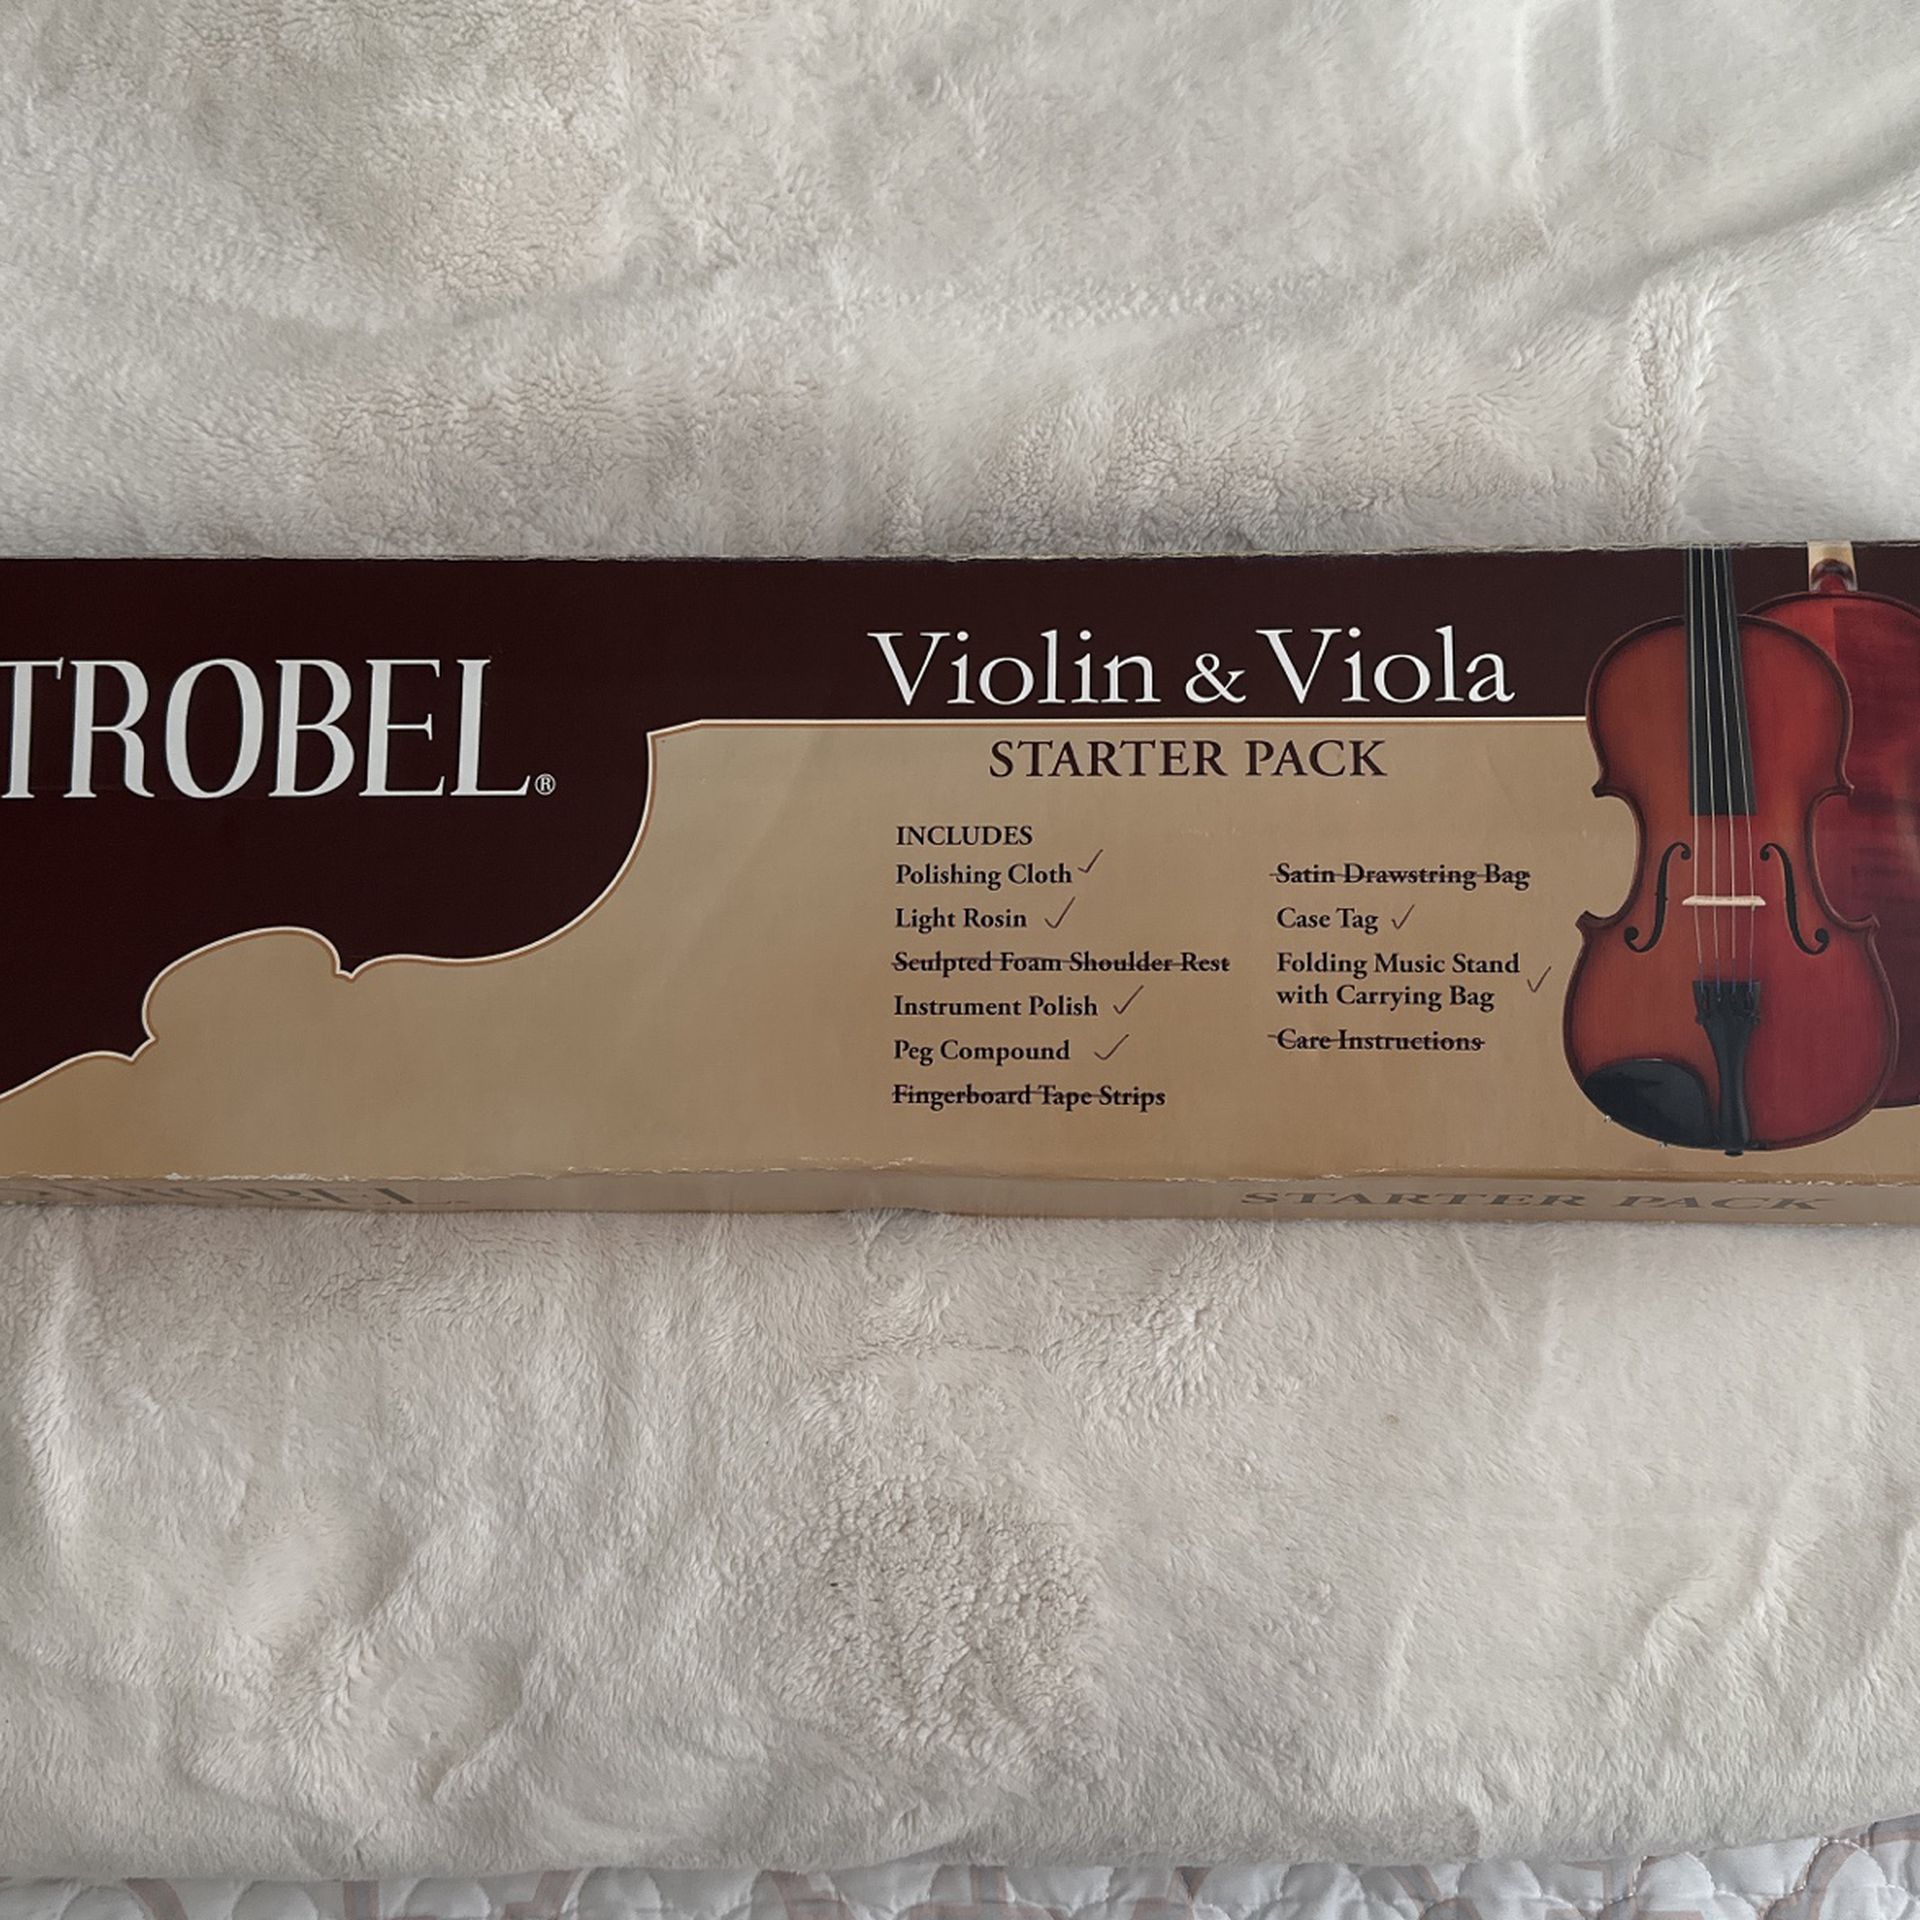 Strobel Violin And Viola Starter Pack, 6/10 Items